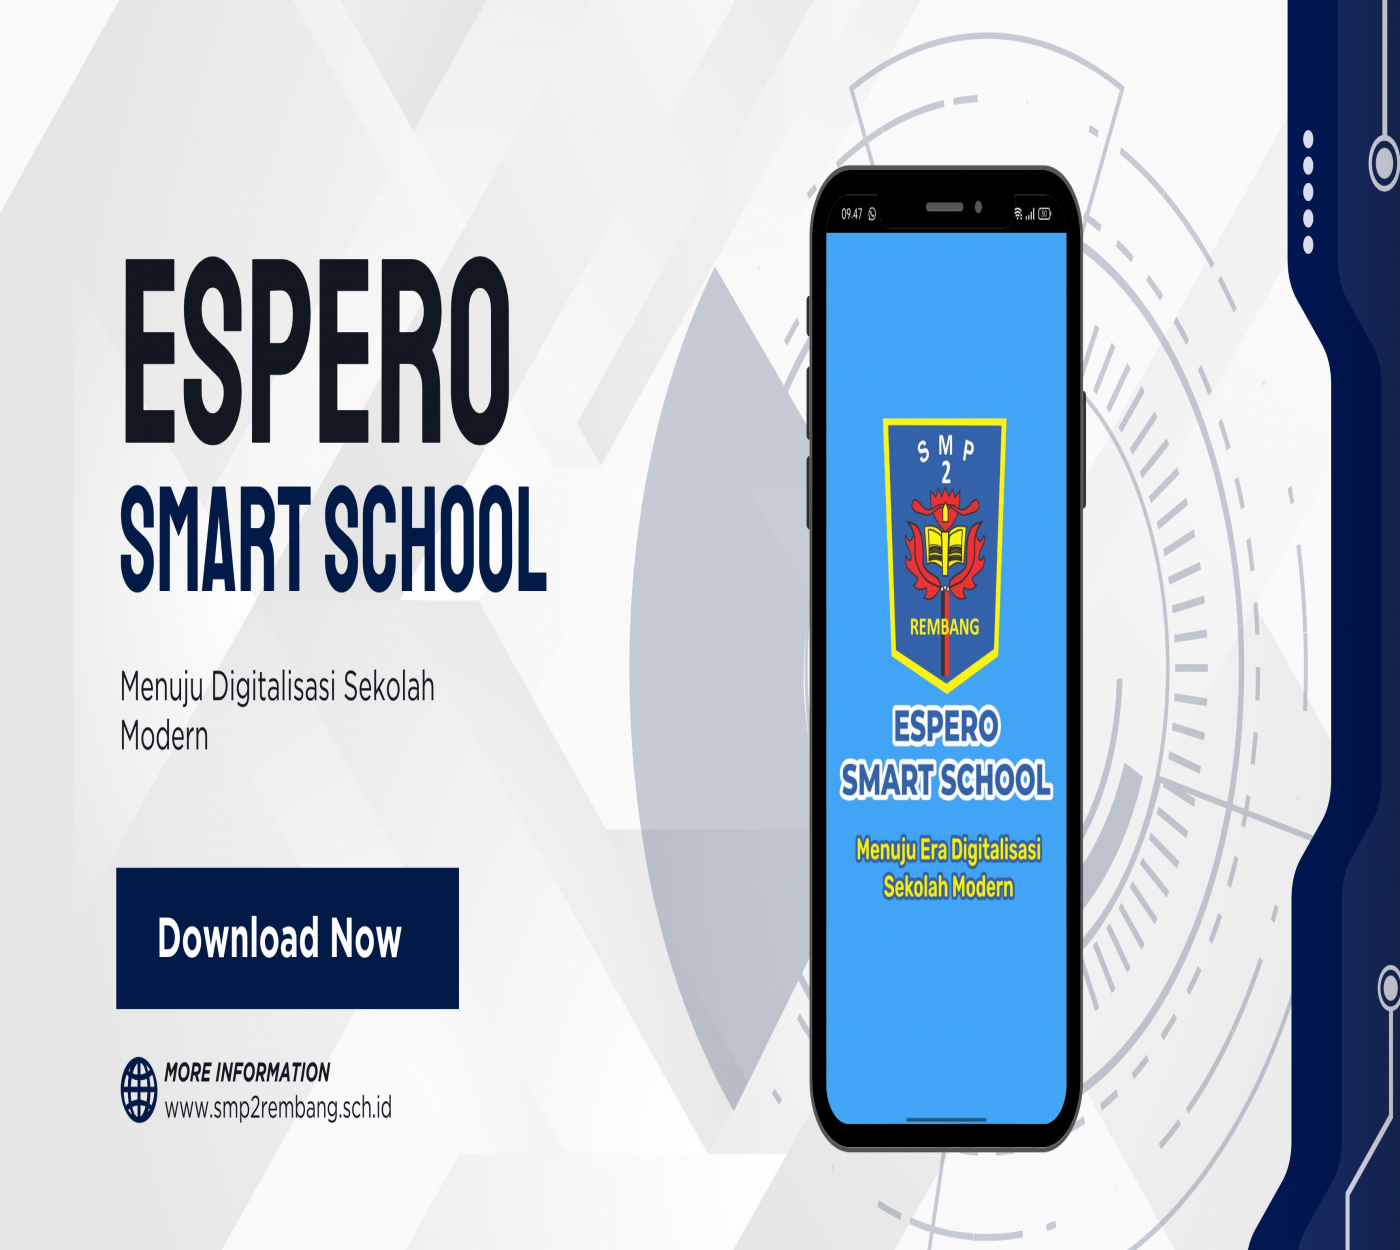 Aplikasi Espero Smart School